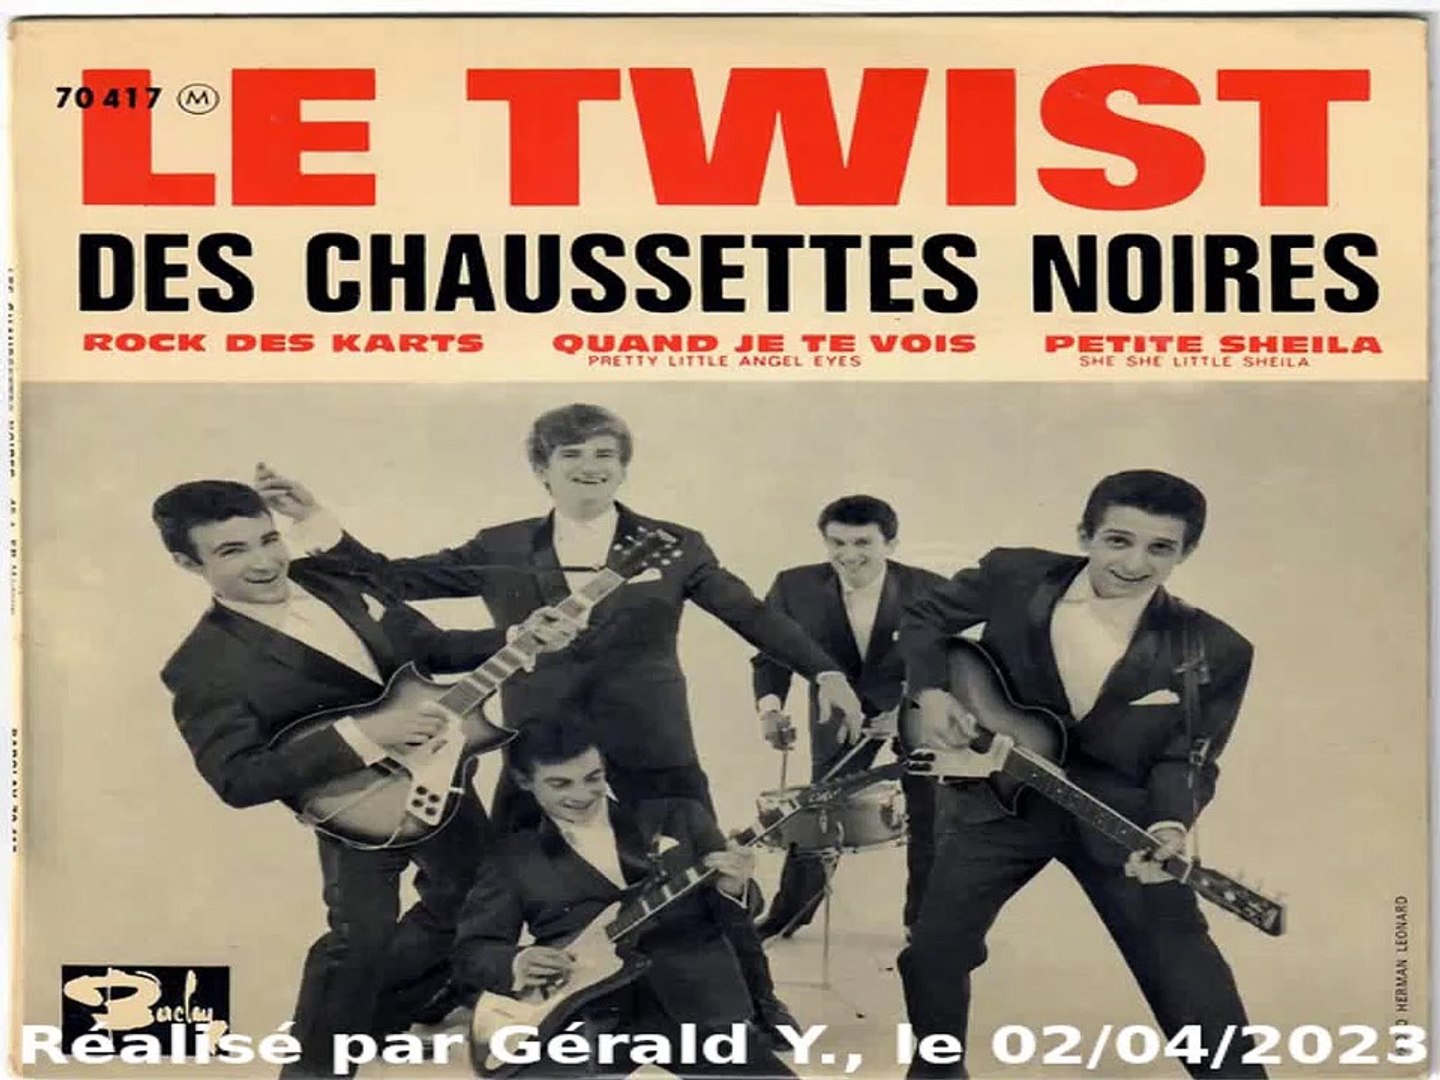 Les Chaussettes Noires & Eddy Mitchell_Rock des karts (1961) - Vidéo  Dailymotion